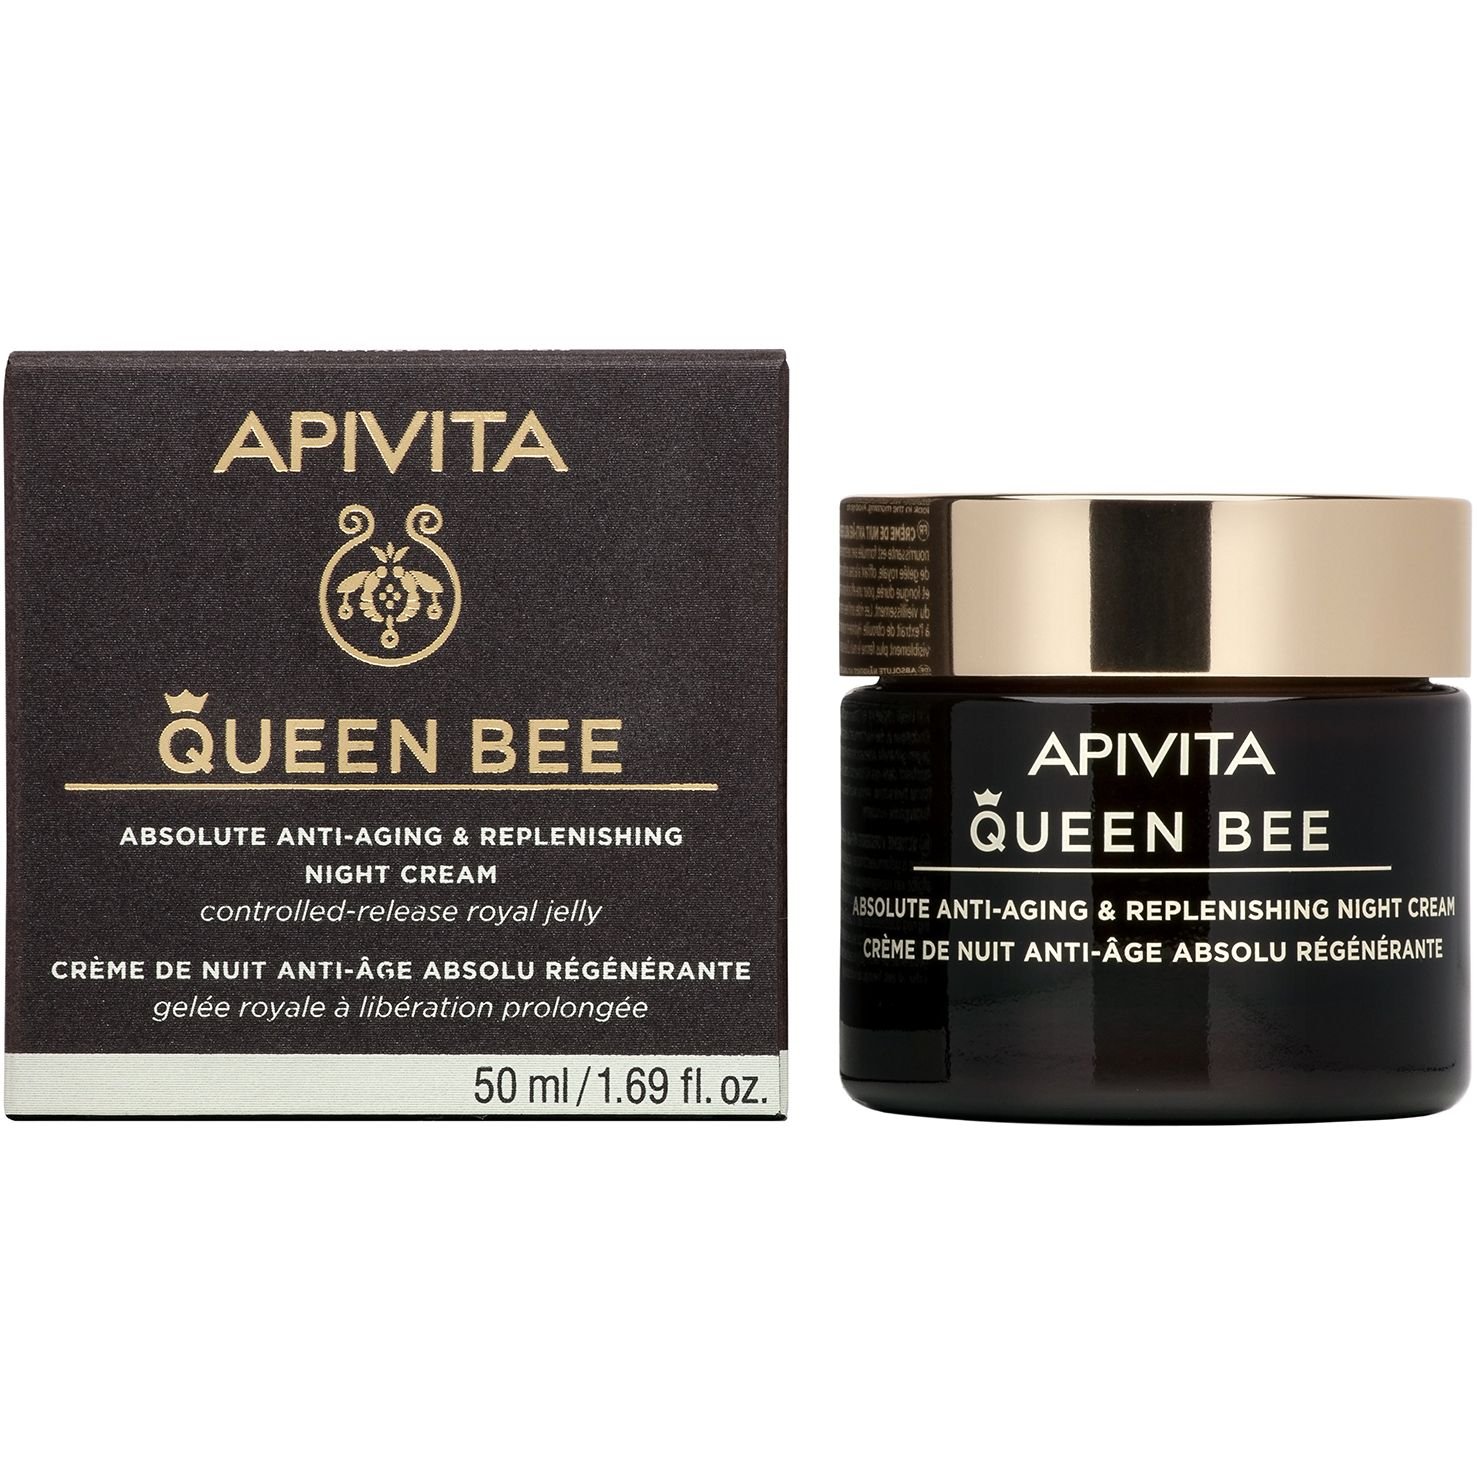 Ночной крем Apivita Queen Bee для комплексного антивозрастного и восстанавливающего действия, 50 мл - фото 1